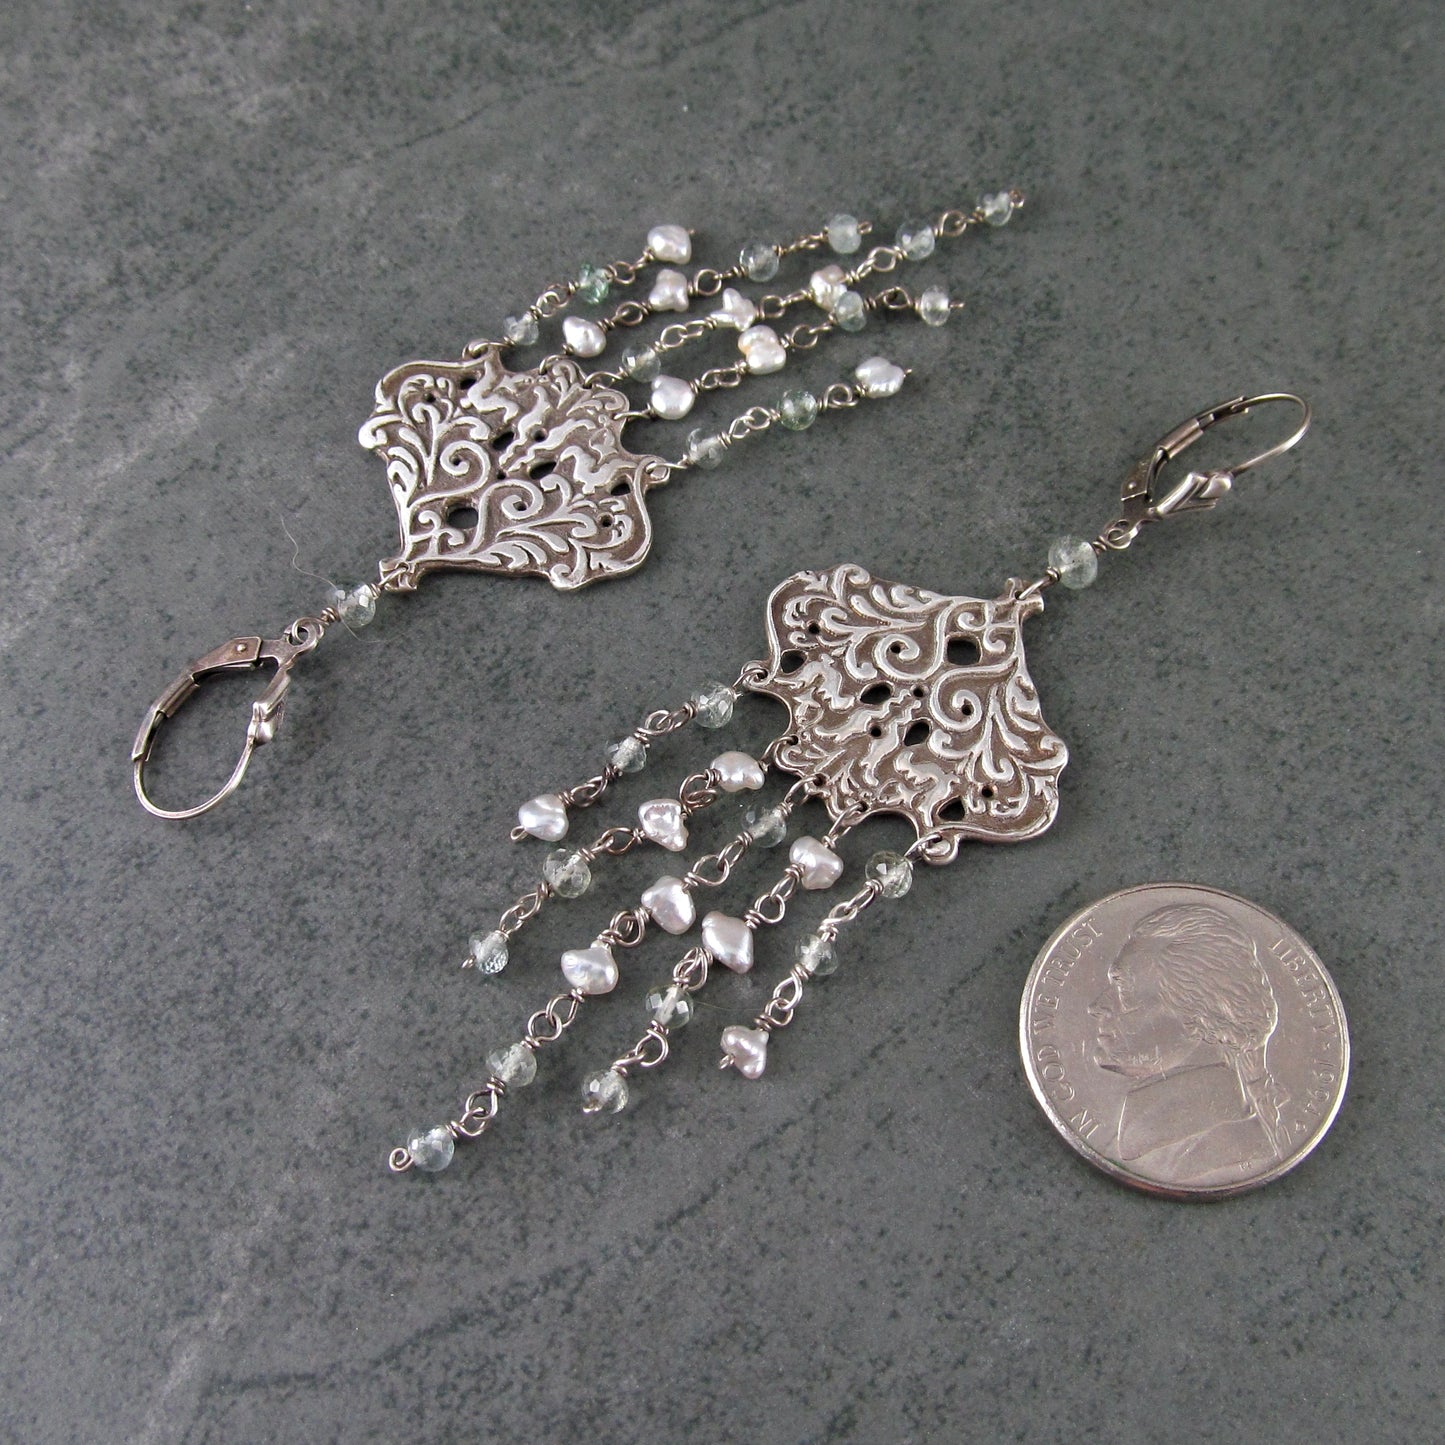 Aquamarine chandelier earrings with silver saltwater keshi pearls, handmade recycled sterling silver earrings-OOAK